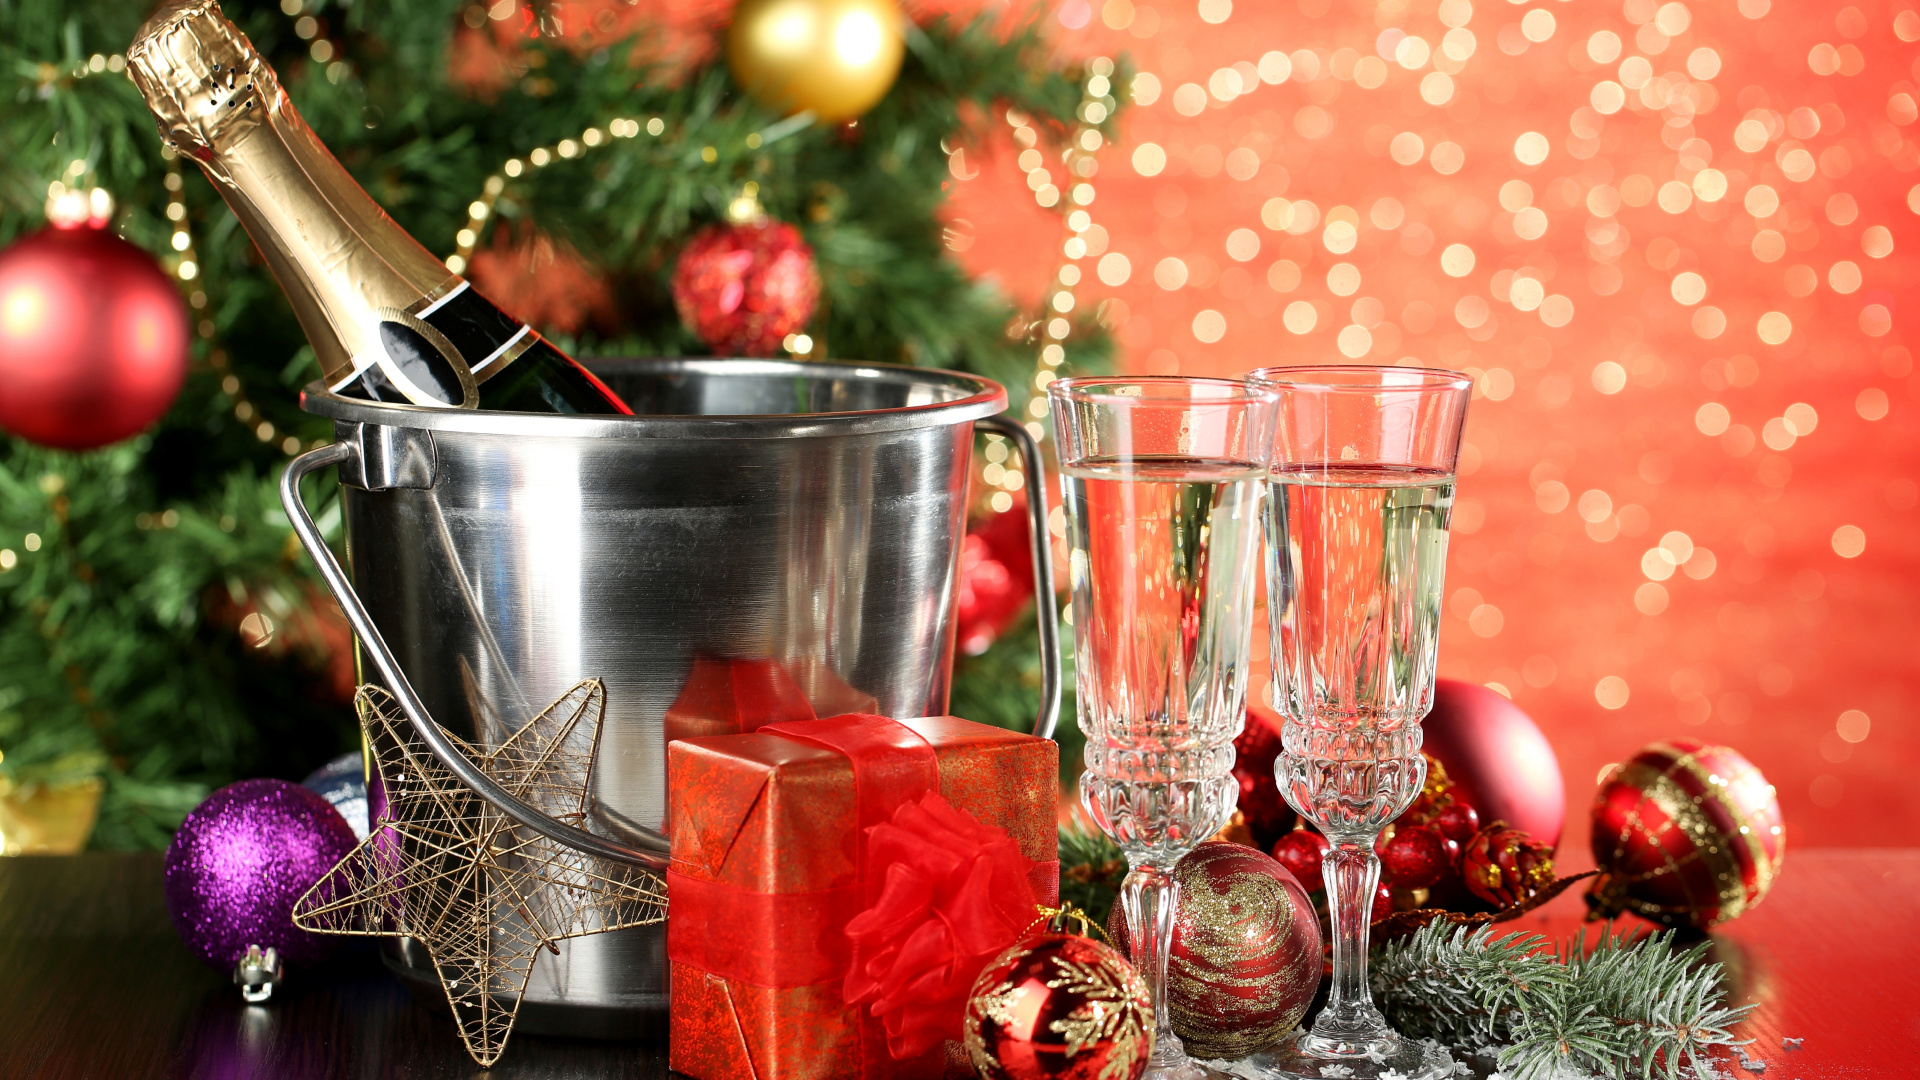 香槟, 新的一年, 圣诞节的装饰品, 圣诞装饰, 圣诞节 壁纸 1920x1080 允许